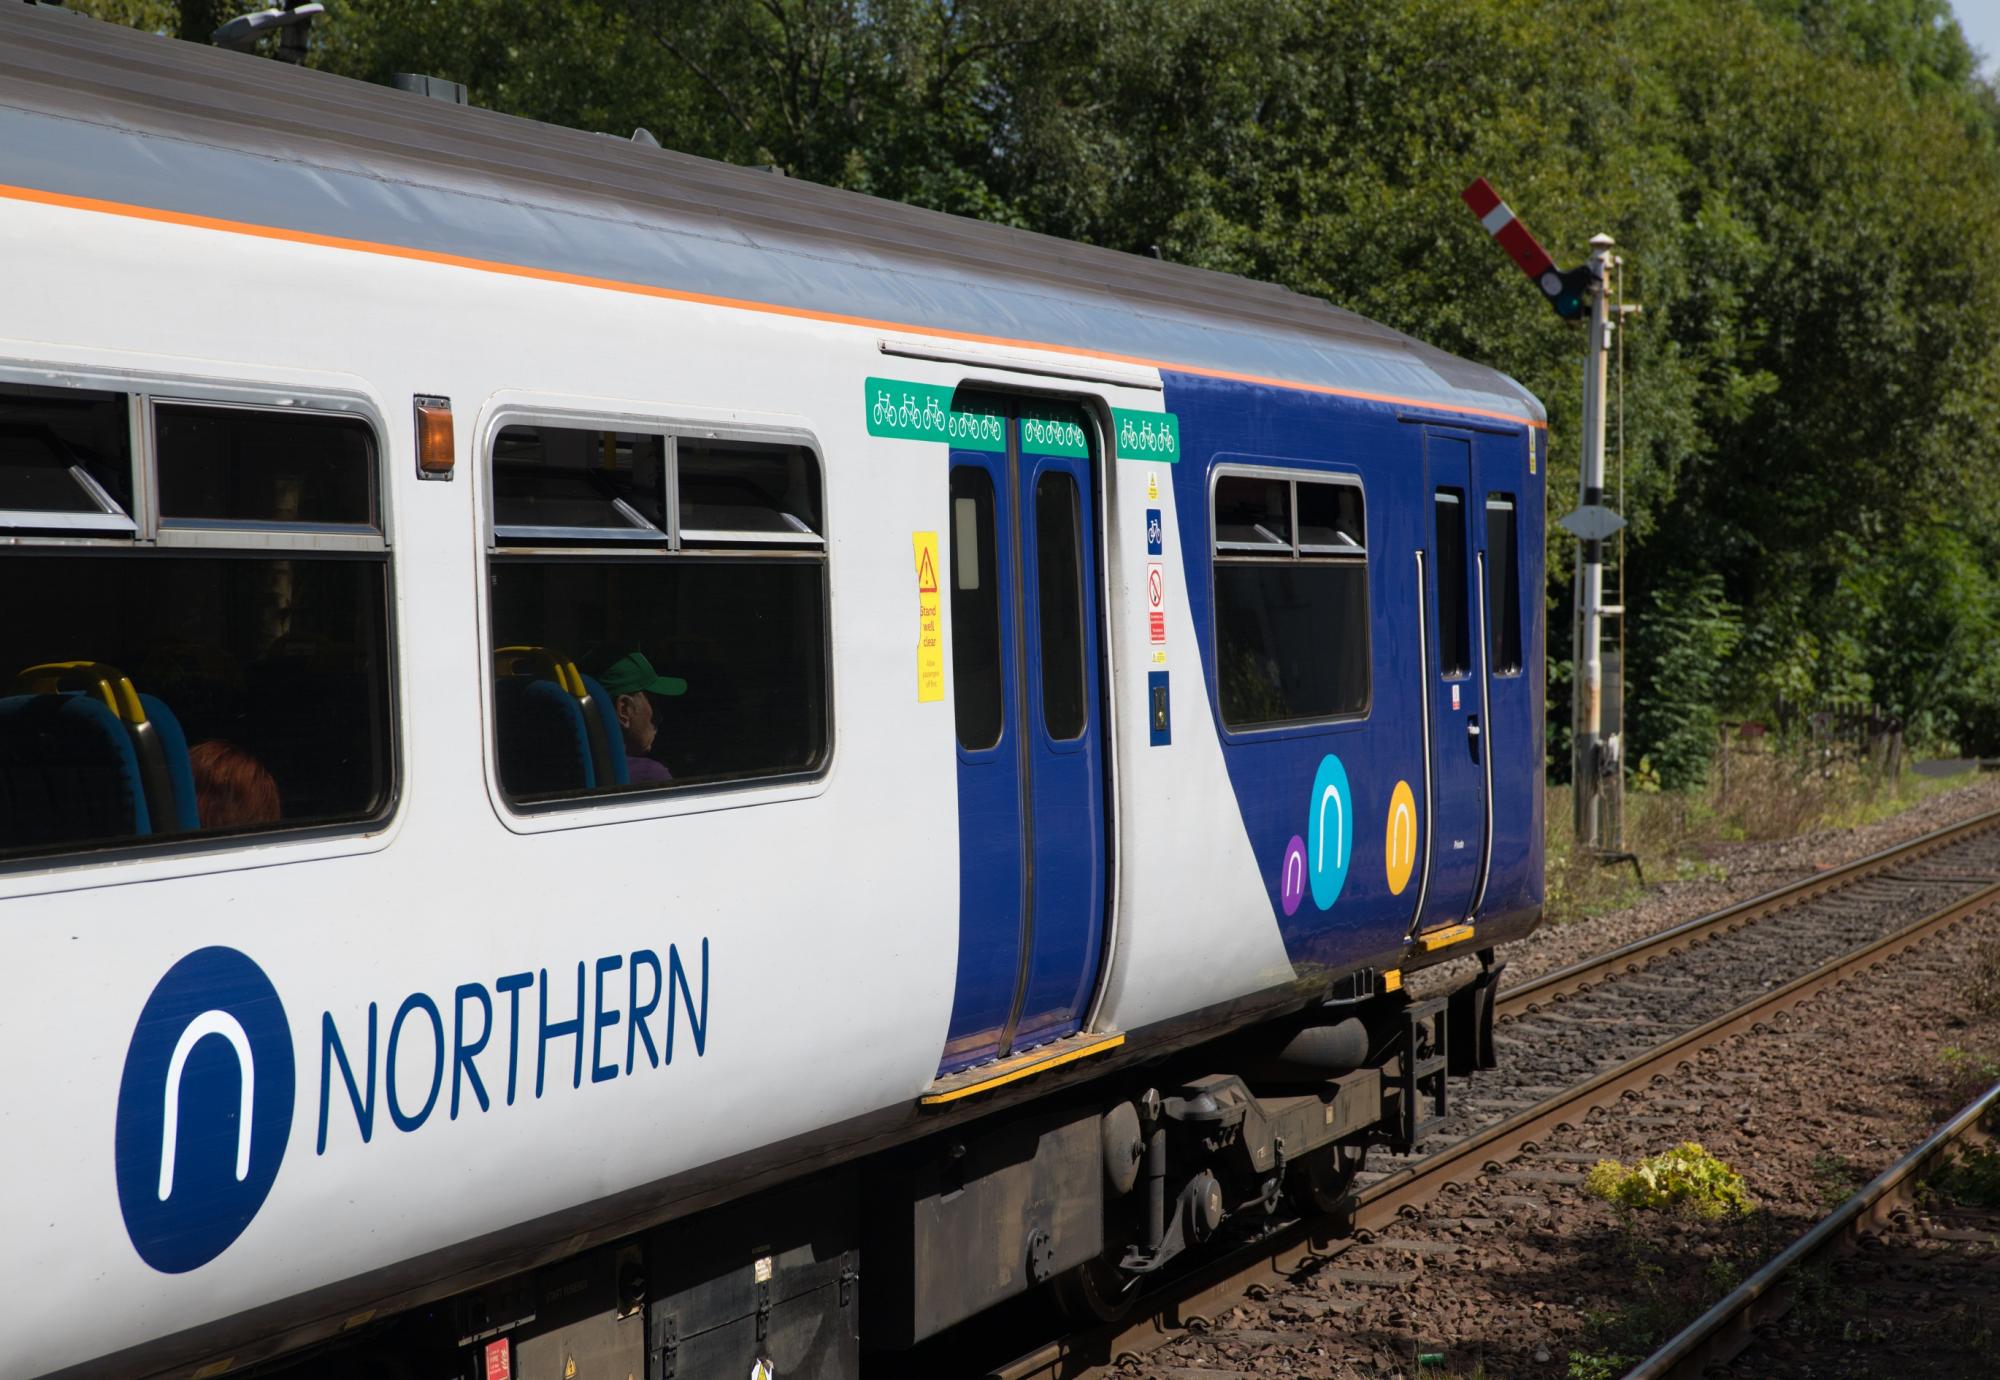 Northern train, via Northern 